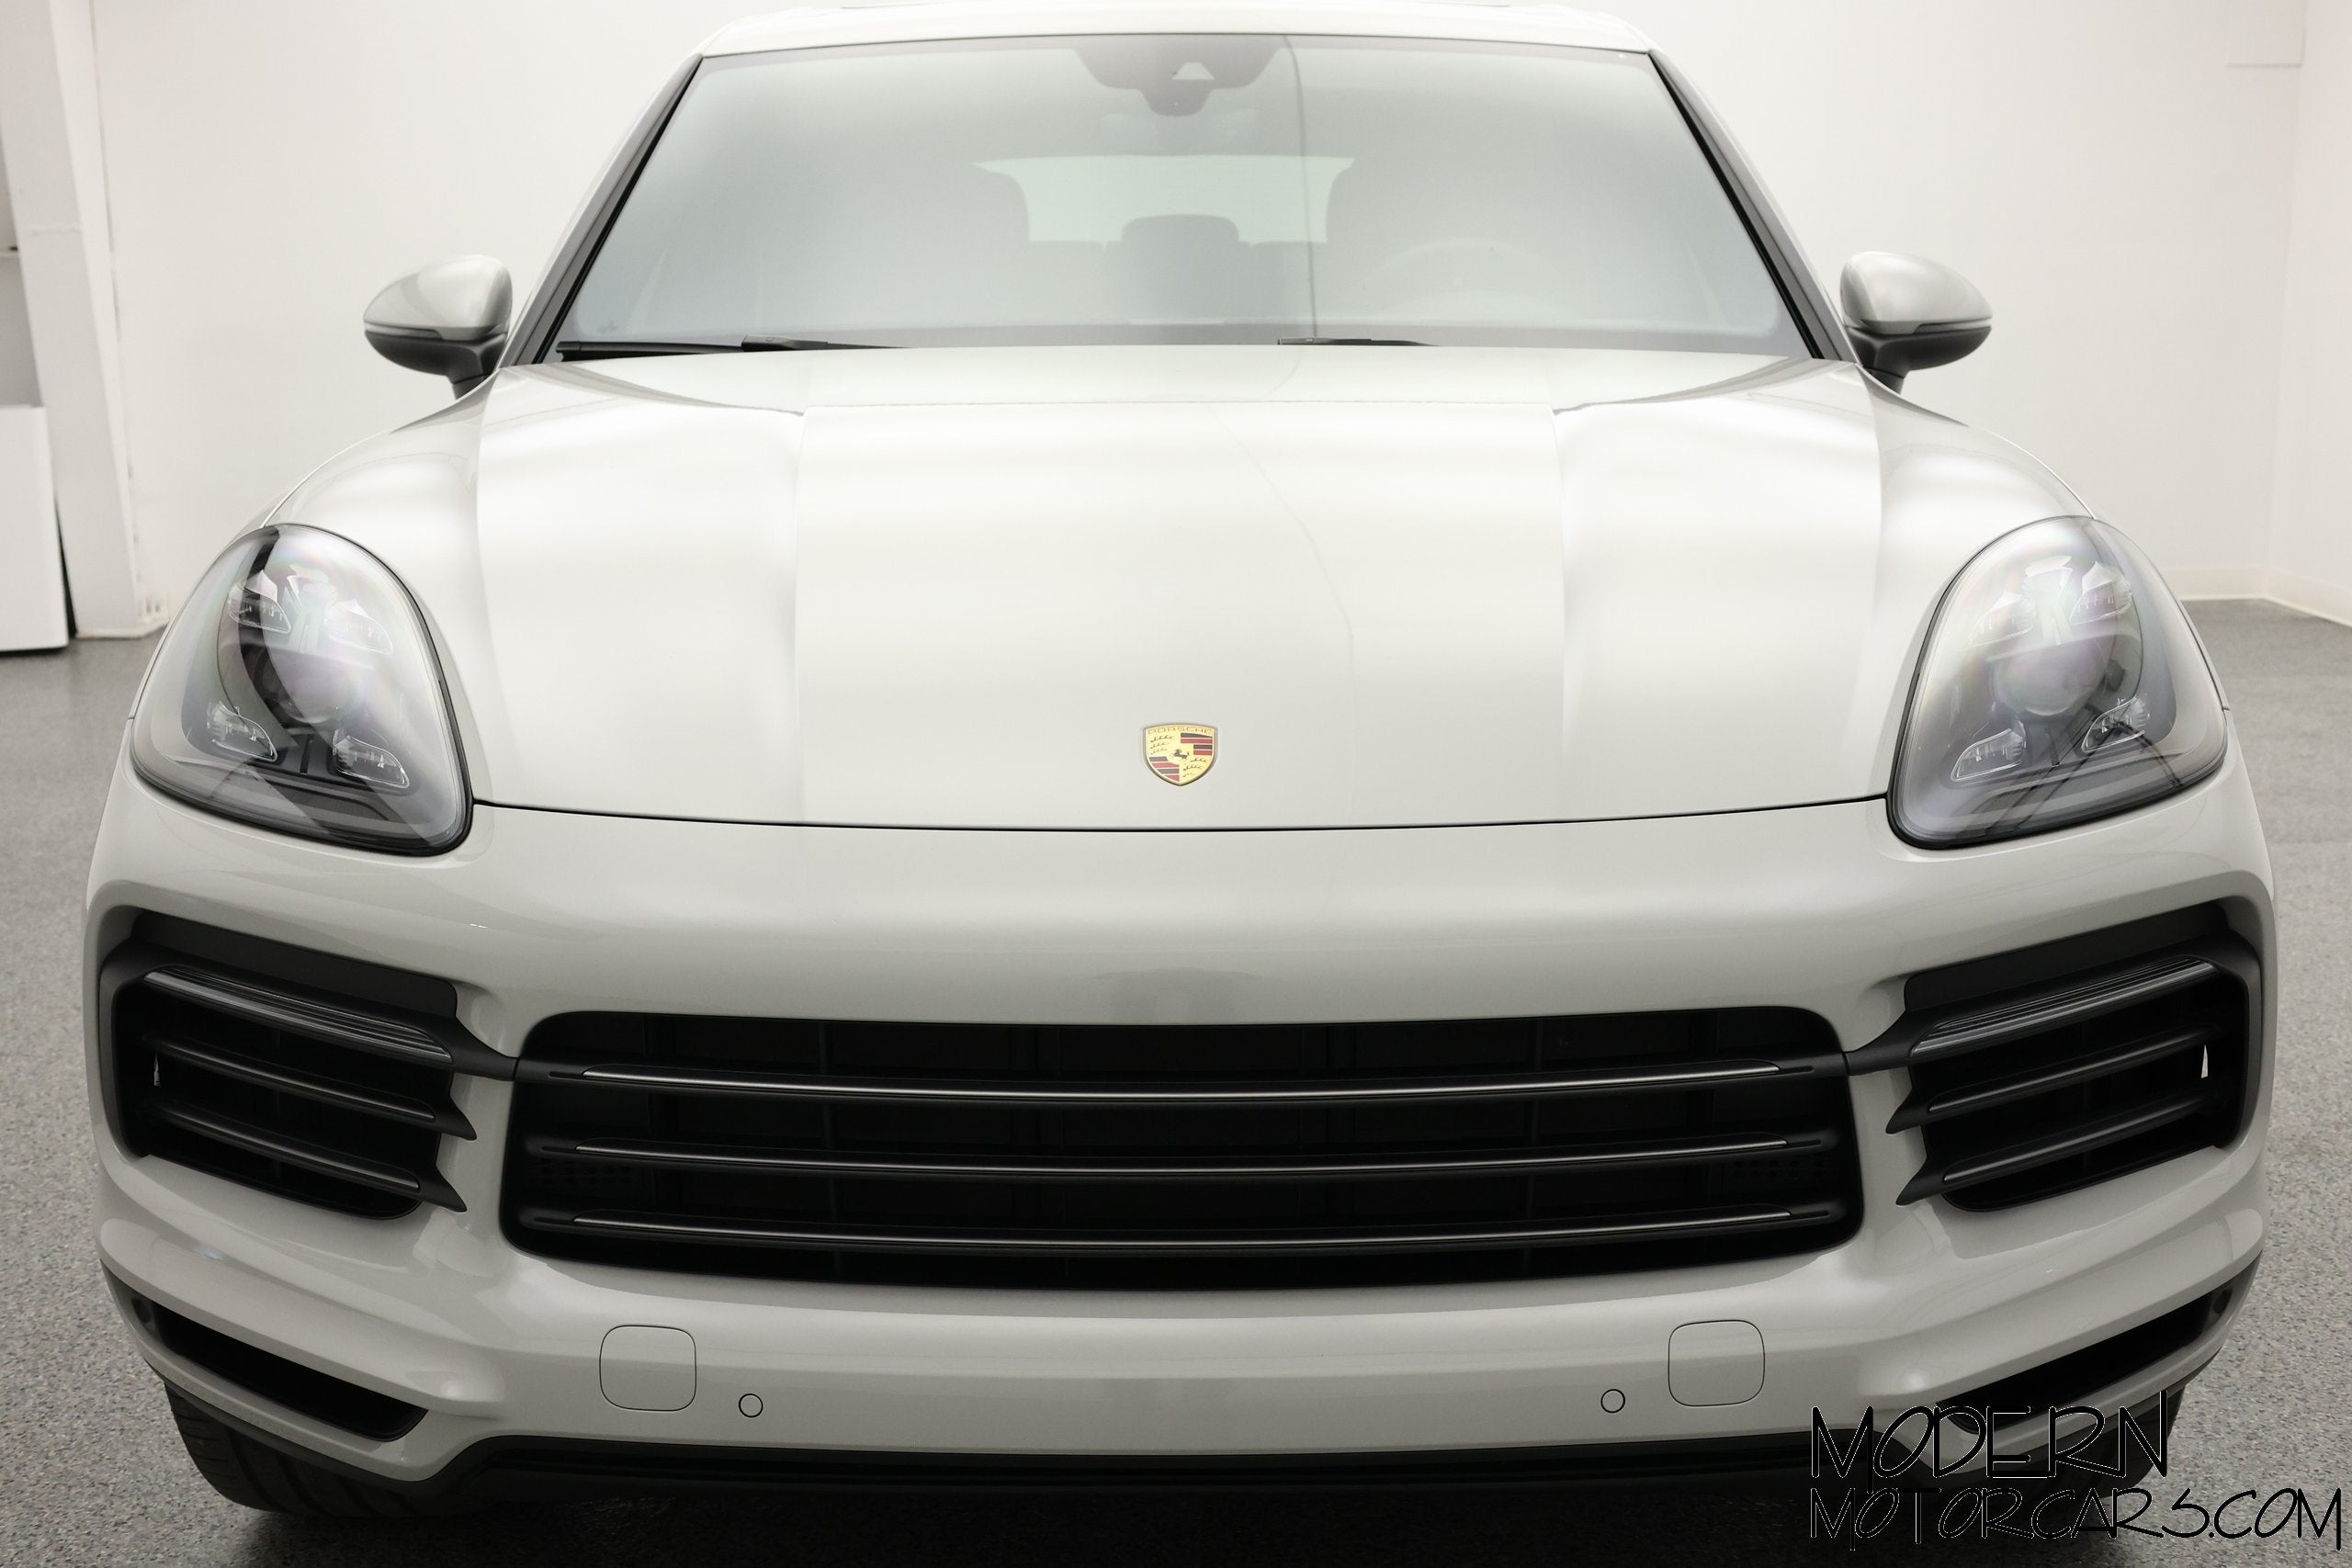 2022 Porsche Cayenne E-Hybrid Platinum Edition